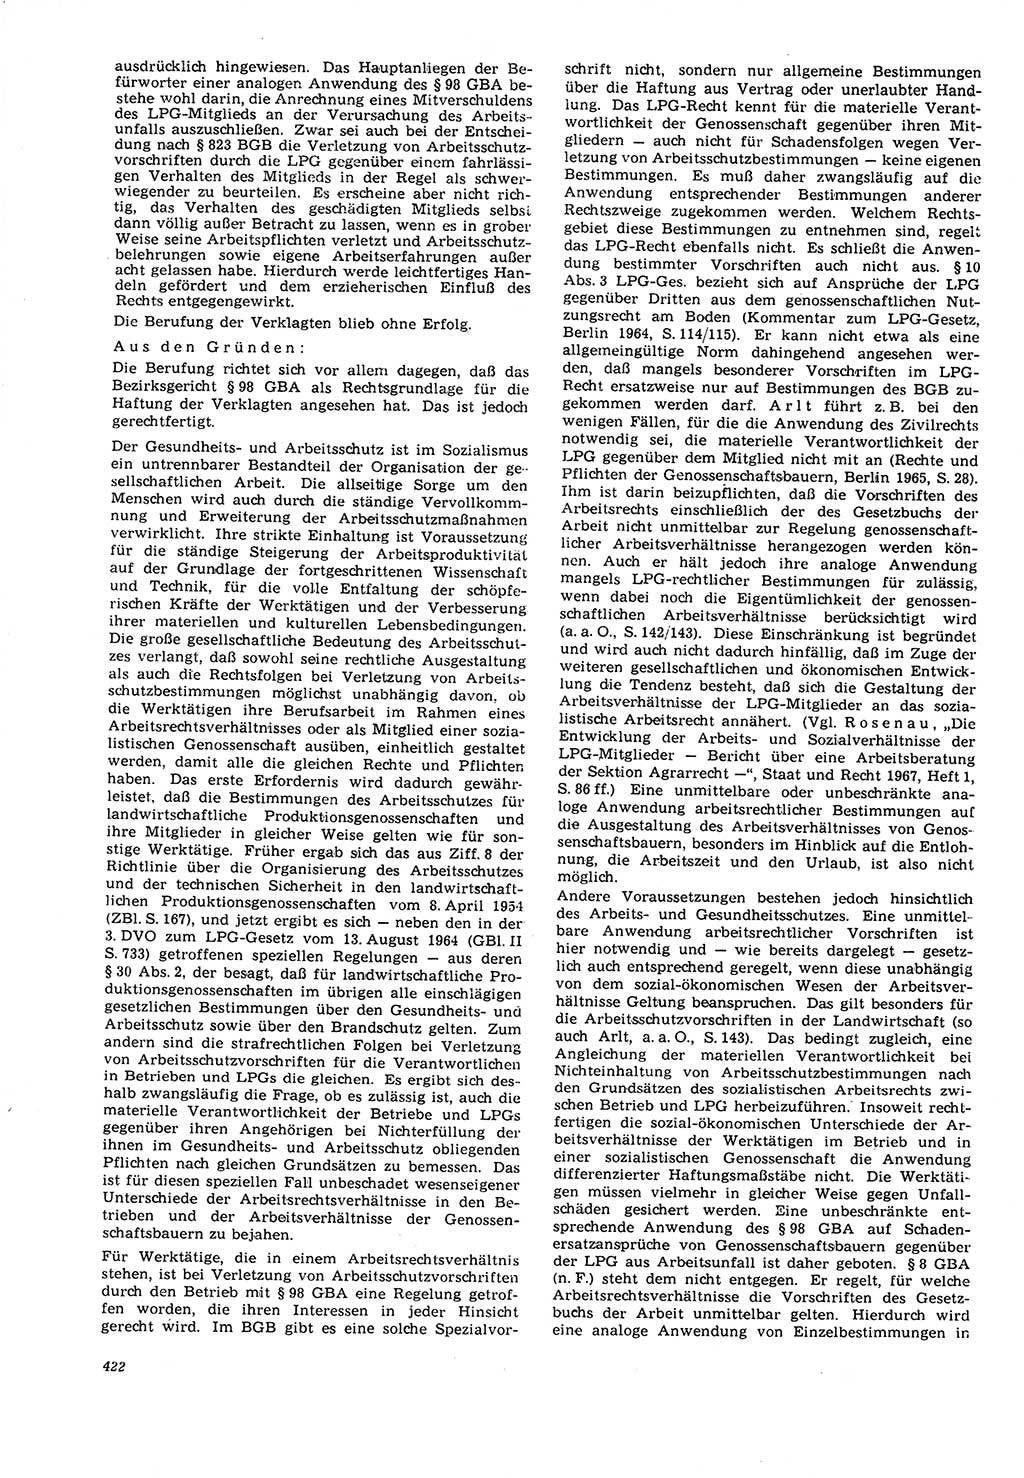 Neue Justiz (NJ), Zeitschrift für Recht und Rechtswissenschaft [Deutsche Demokratische Republik (DDR)], 21. Jahrgang 1967, Seite 422 (NJ DDR 1967, S. 422)